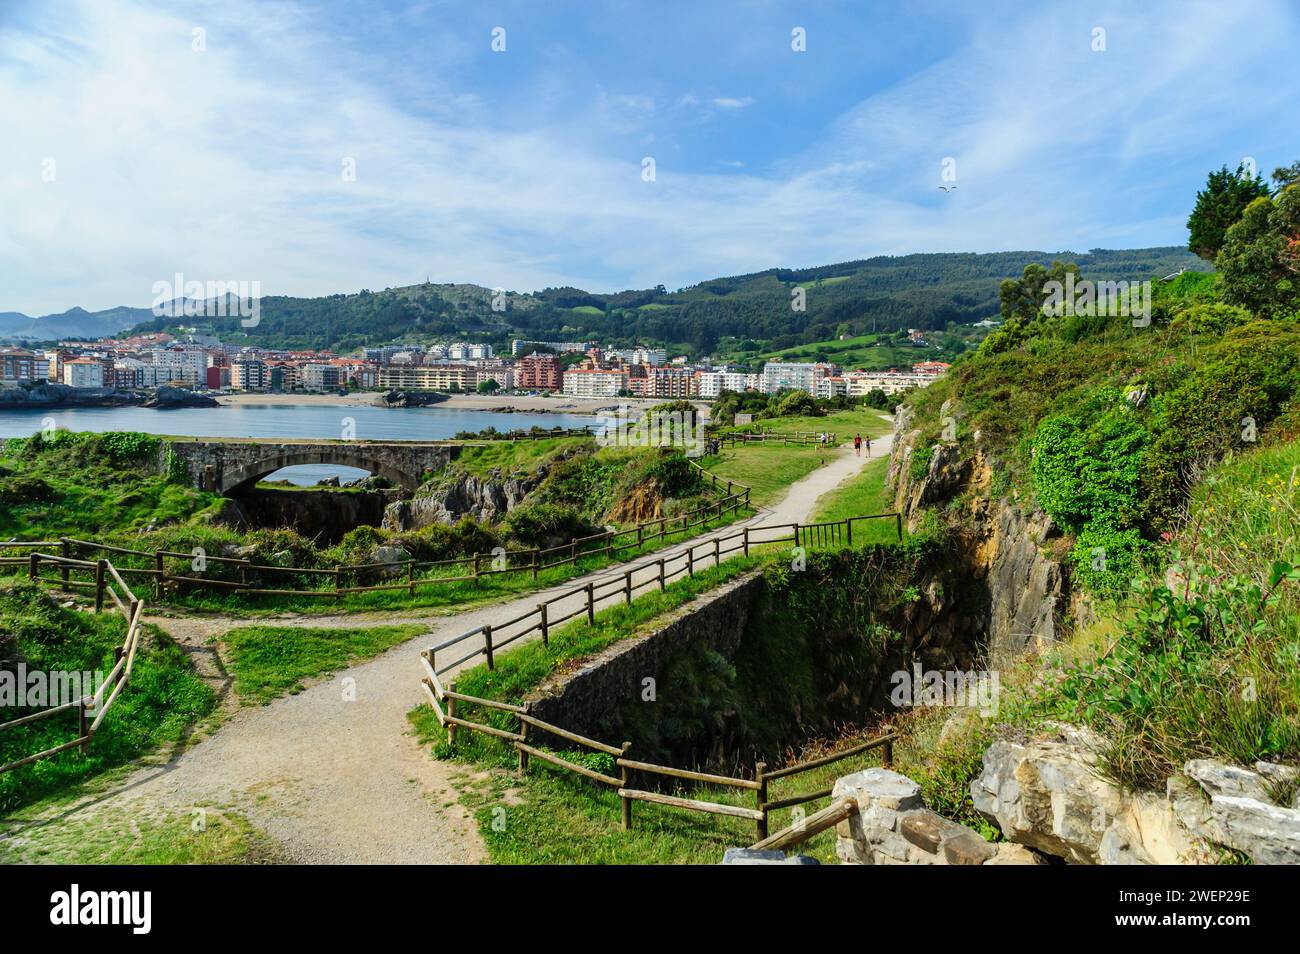 Un sentier de randonnée pittoresque le long de la côte rocheuse avec vue sur la ville de Castro Urdiales et les collines luxuriantes en arrière-plan. Banque D'Images